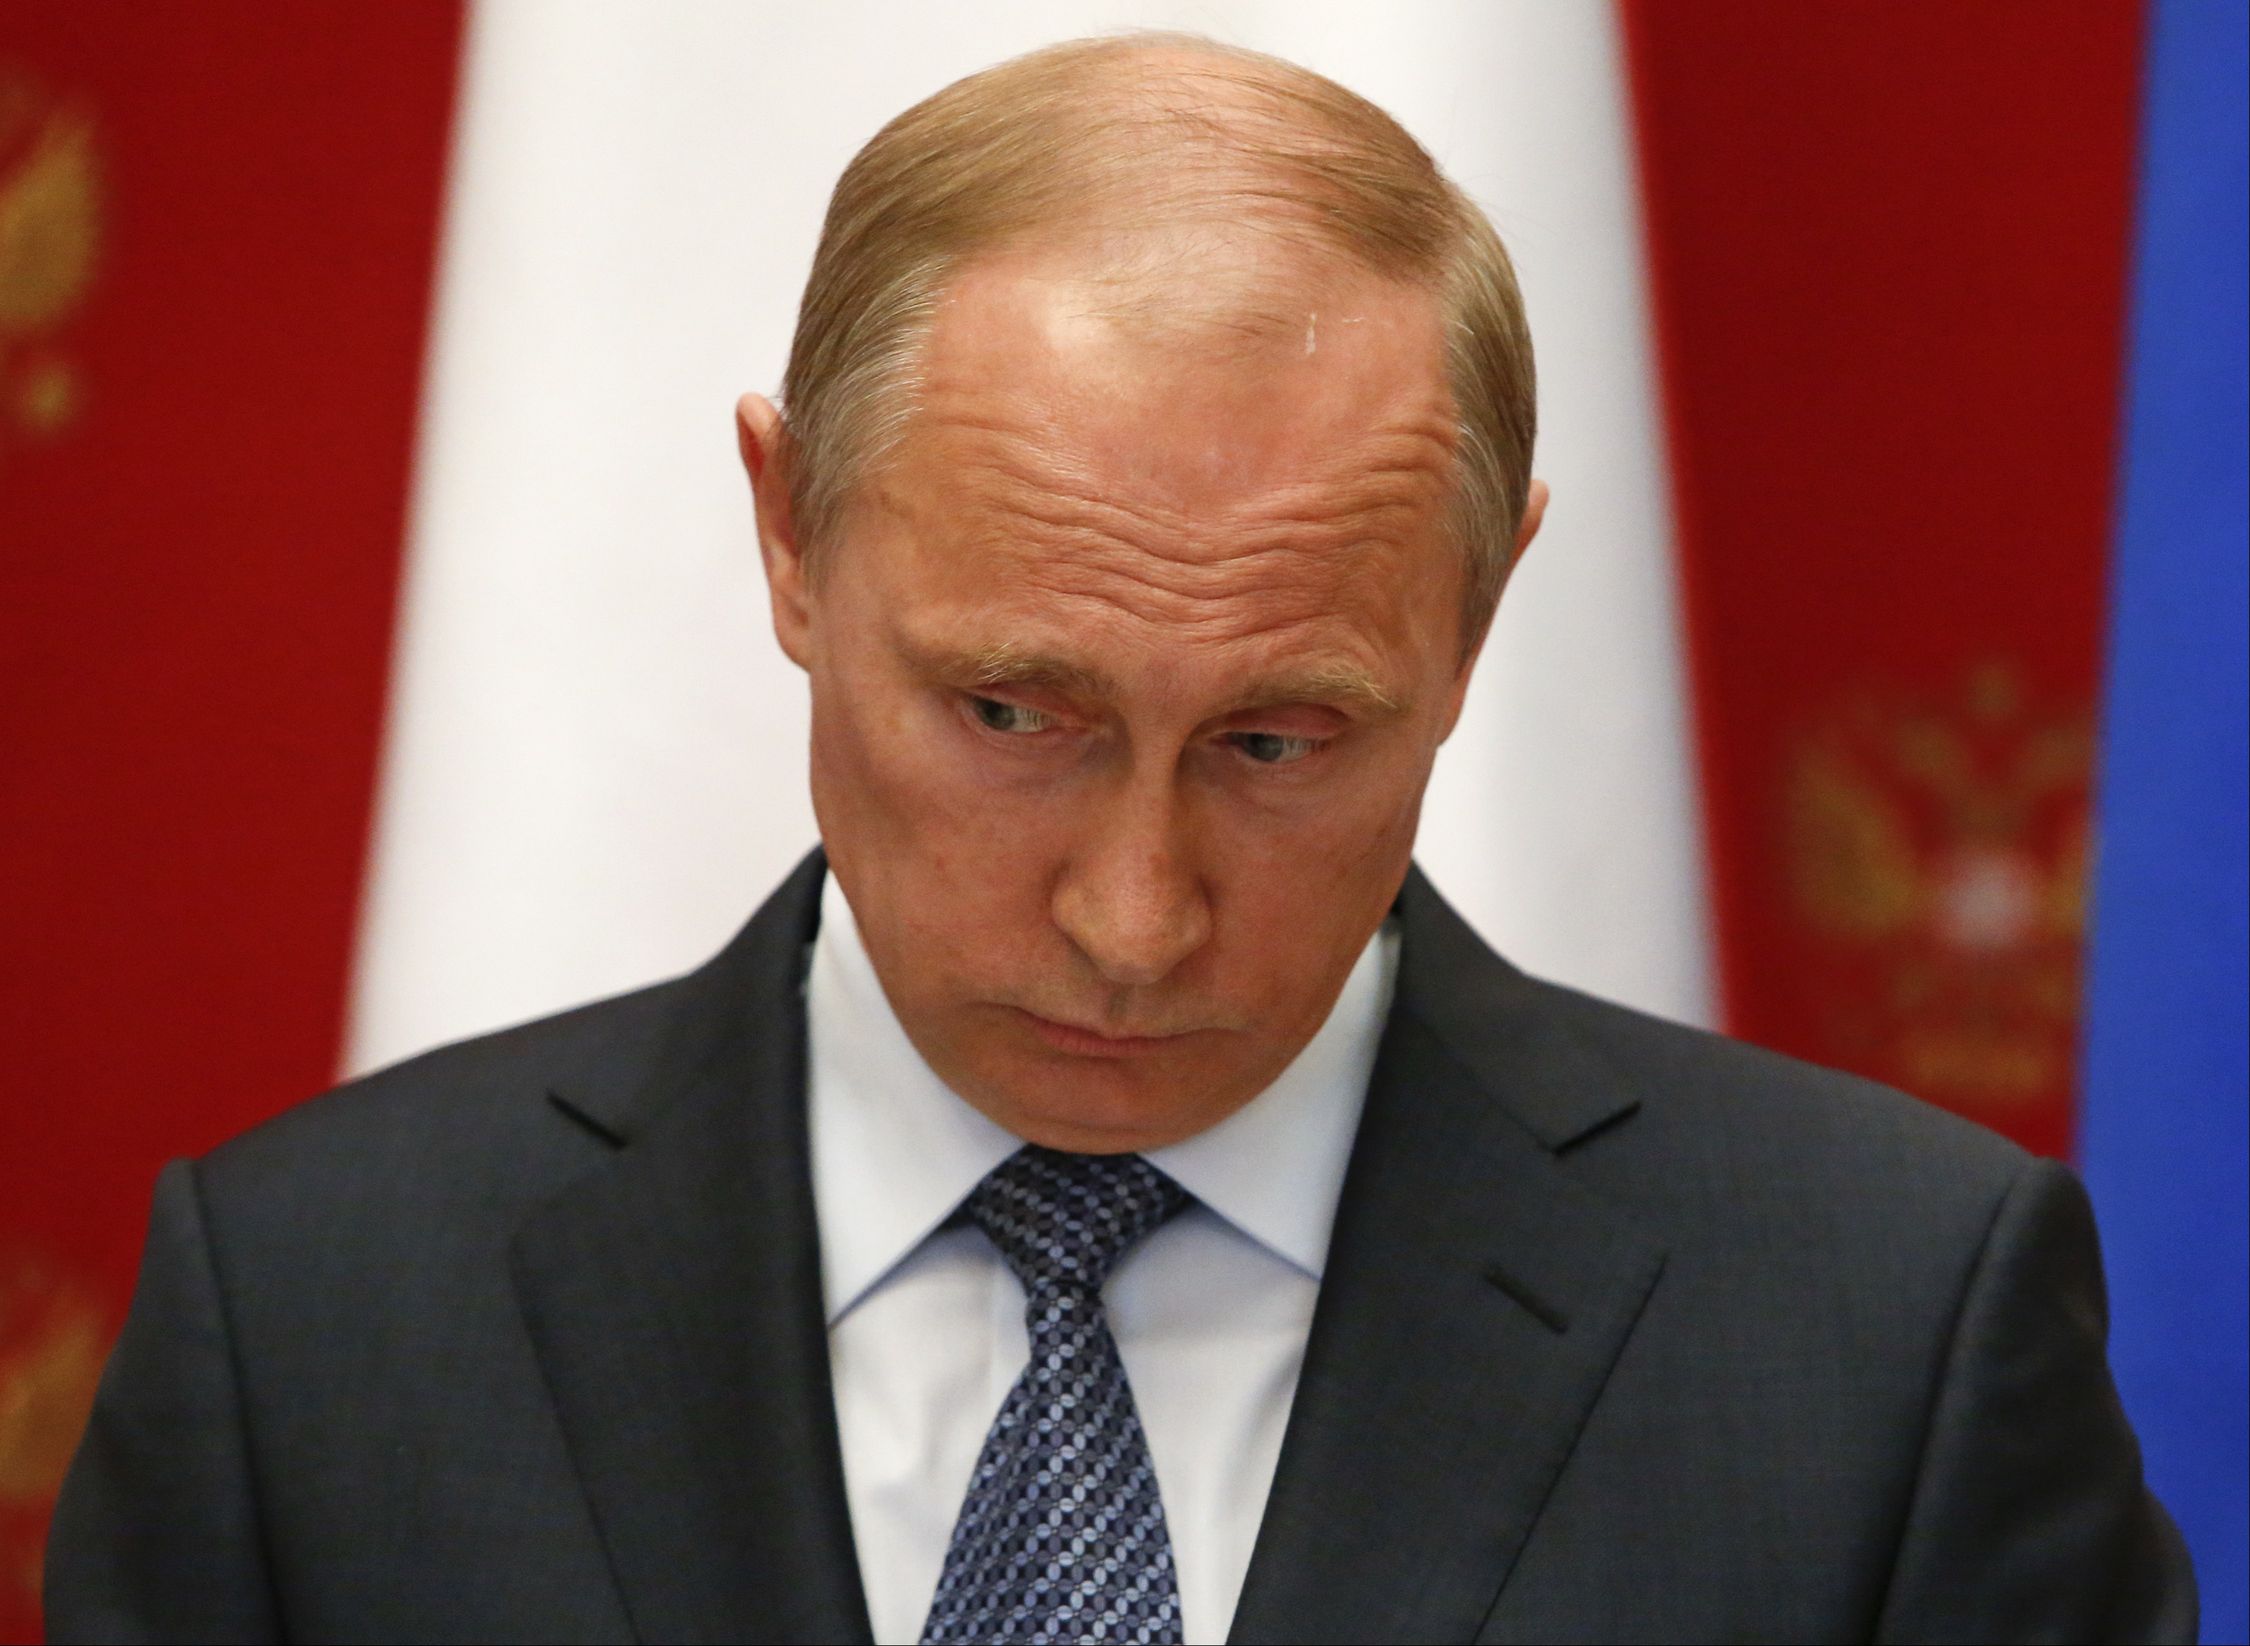 Путин очень сильно просчитался, поверив в то, что юго-восток Украины активно поддержит "русский мир" и ввод российских войск, - националист Демушкин